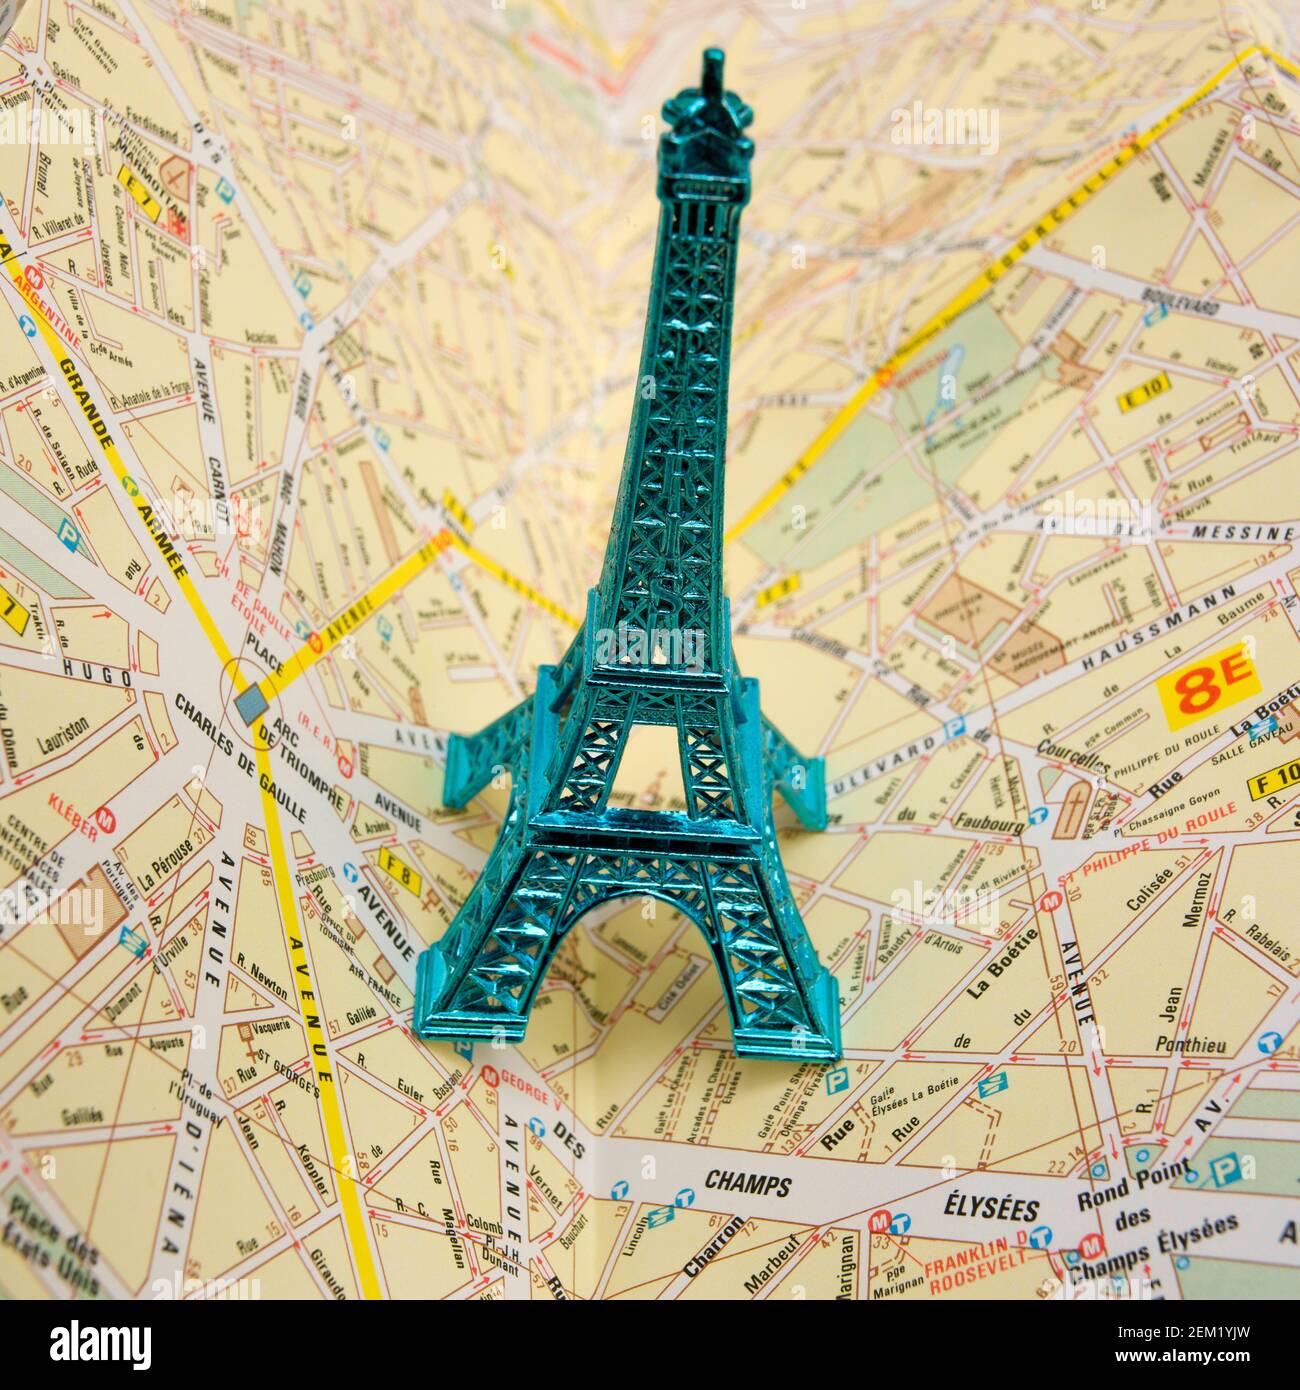 Miliature Eiffel Tower on Paris city map Stock Photo